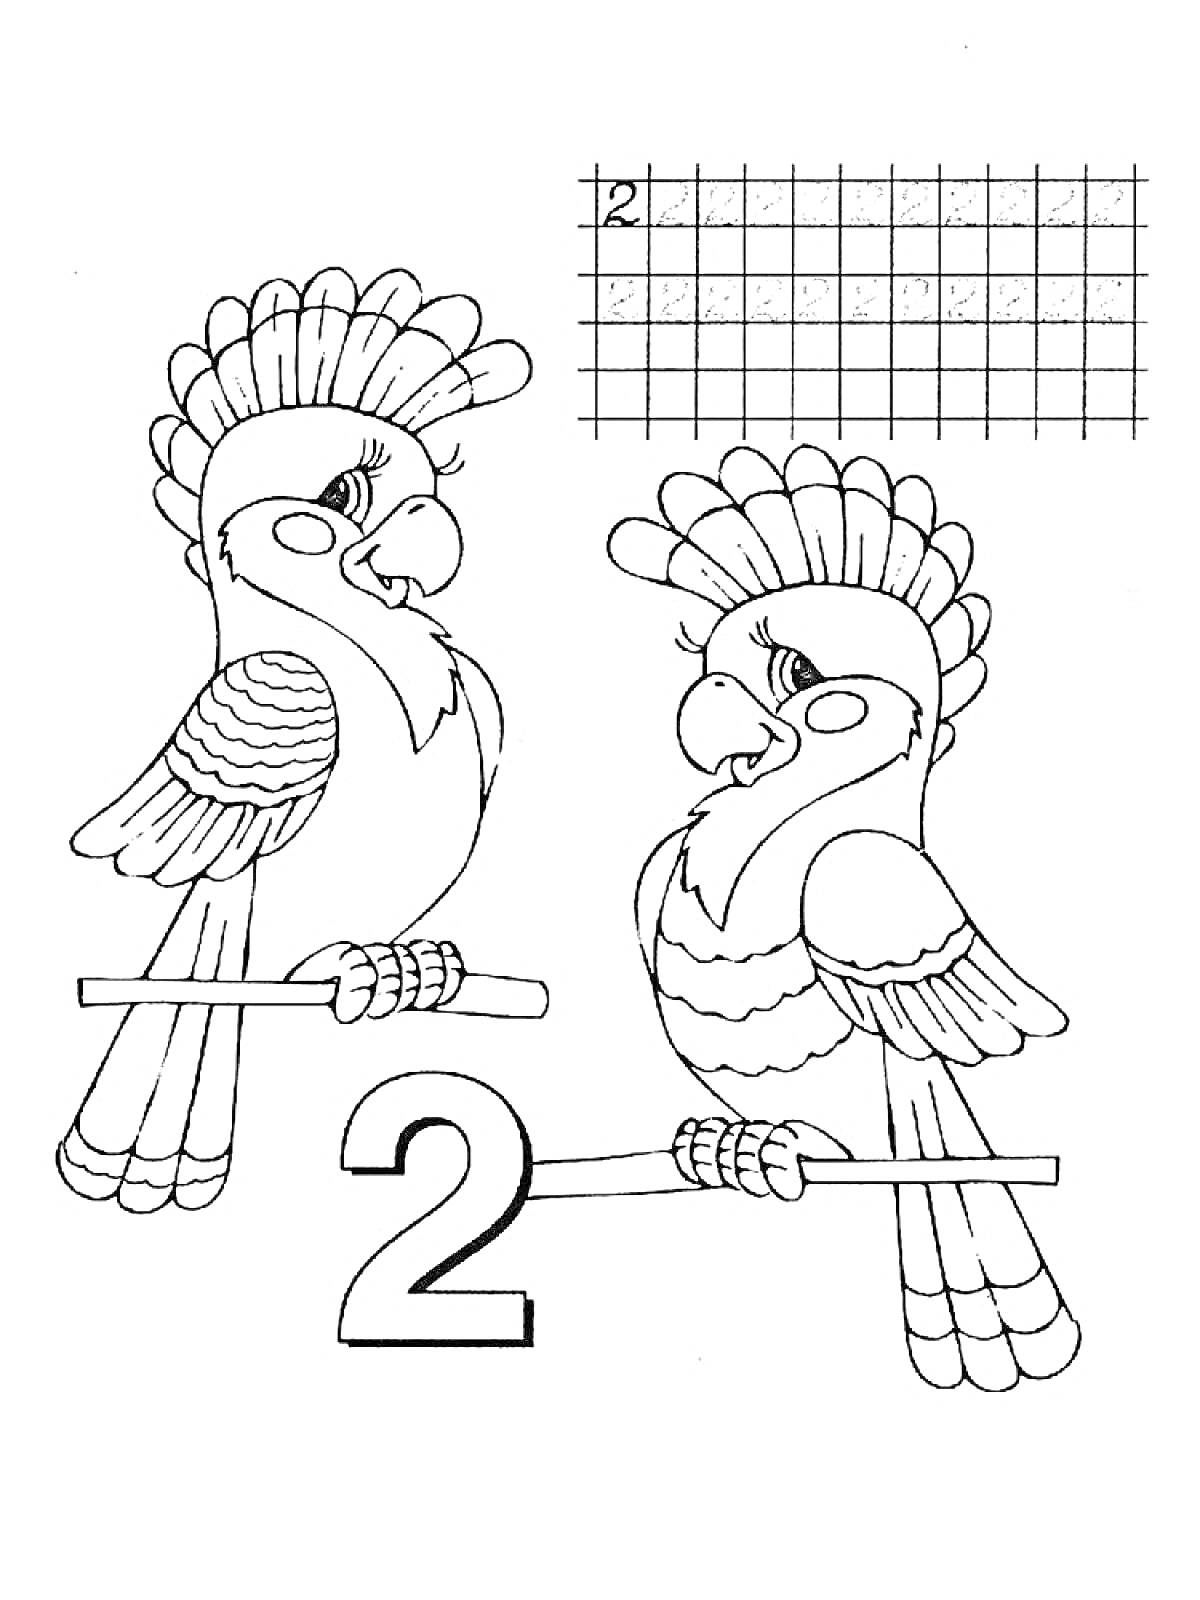 Раскраска Два попугая на жердочках с цифрой 2 и сеткой для обучения письму цифры